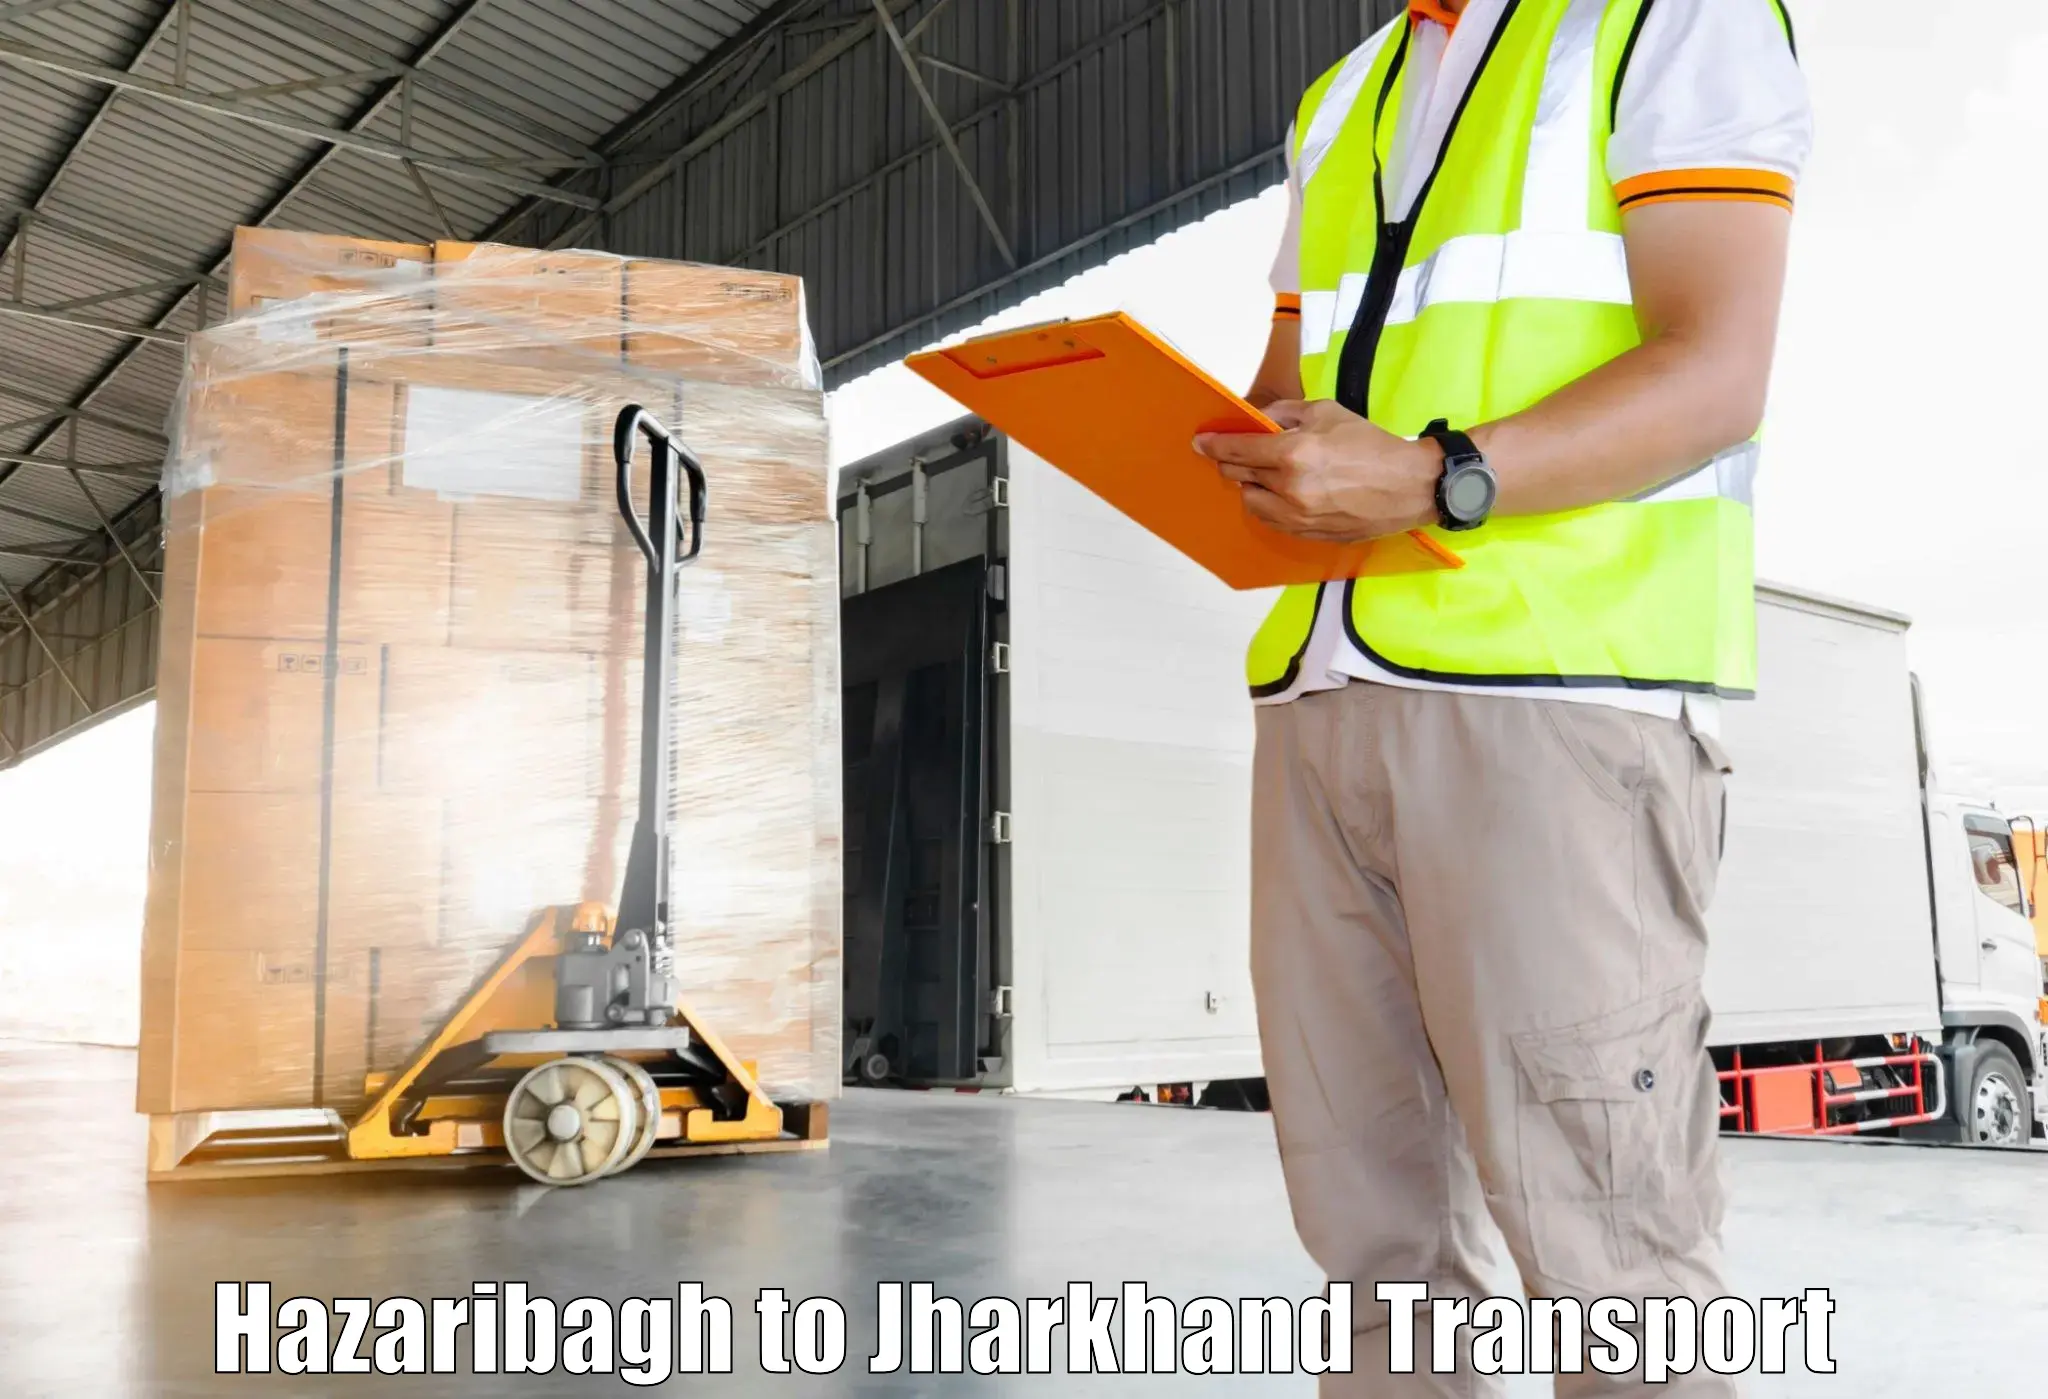 Interstate transport services in Hazaribagh to Hazaribagh